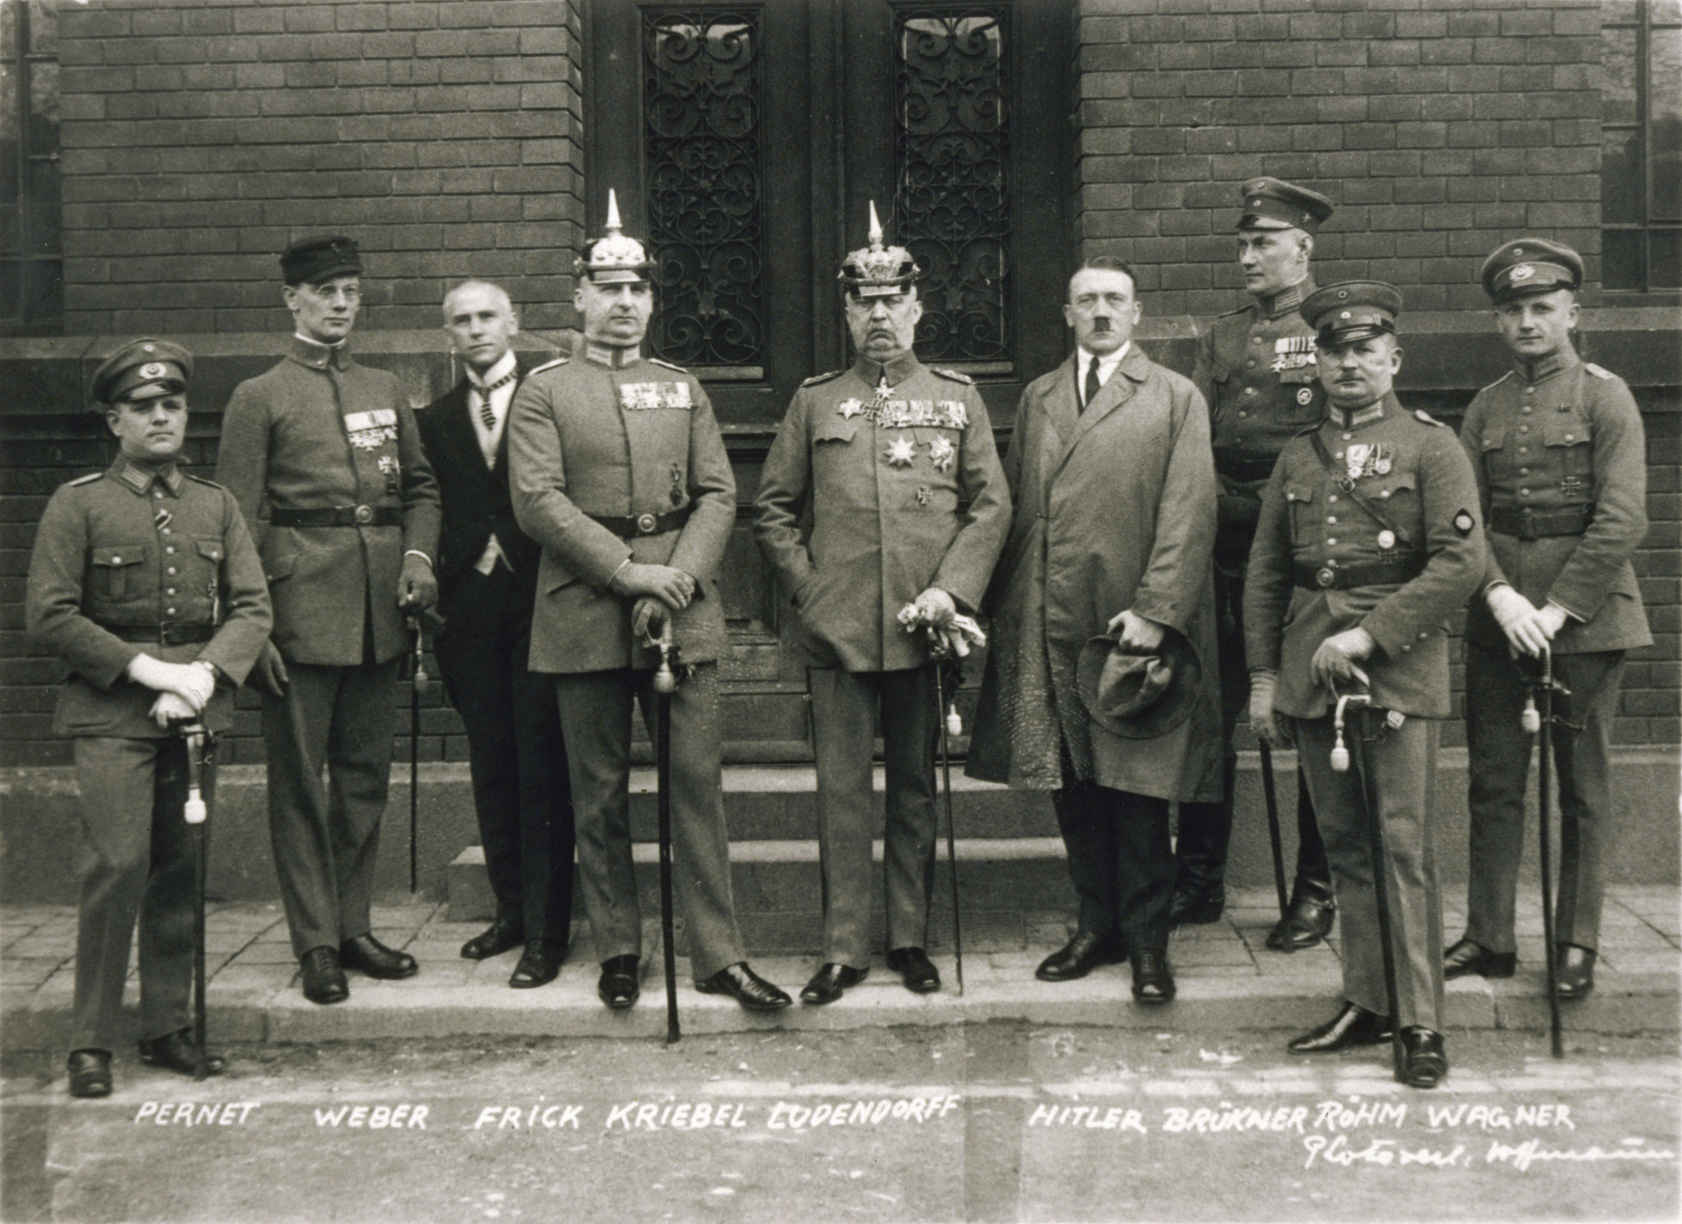 Hitler i forbindelse med retssagen i 1924 om “ølkælderkuppet”. Hitler ses som nr. 4 fra højre. Foto: Deutsches Bundesarchiv